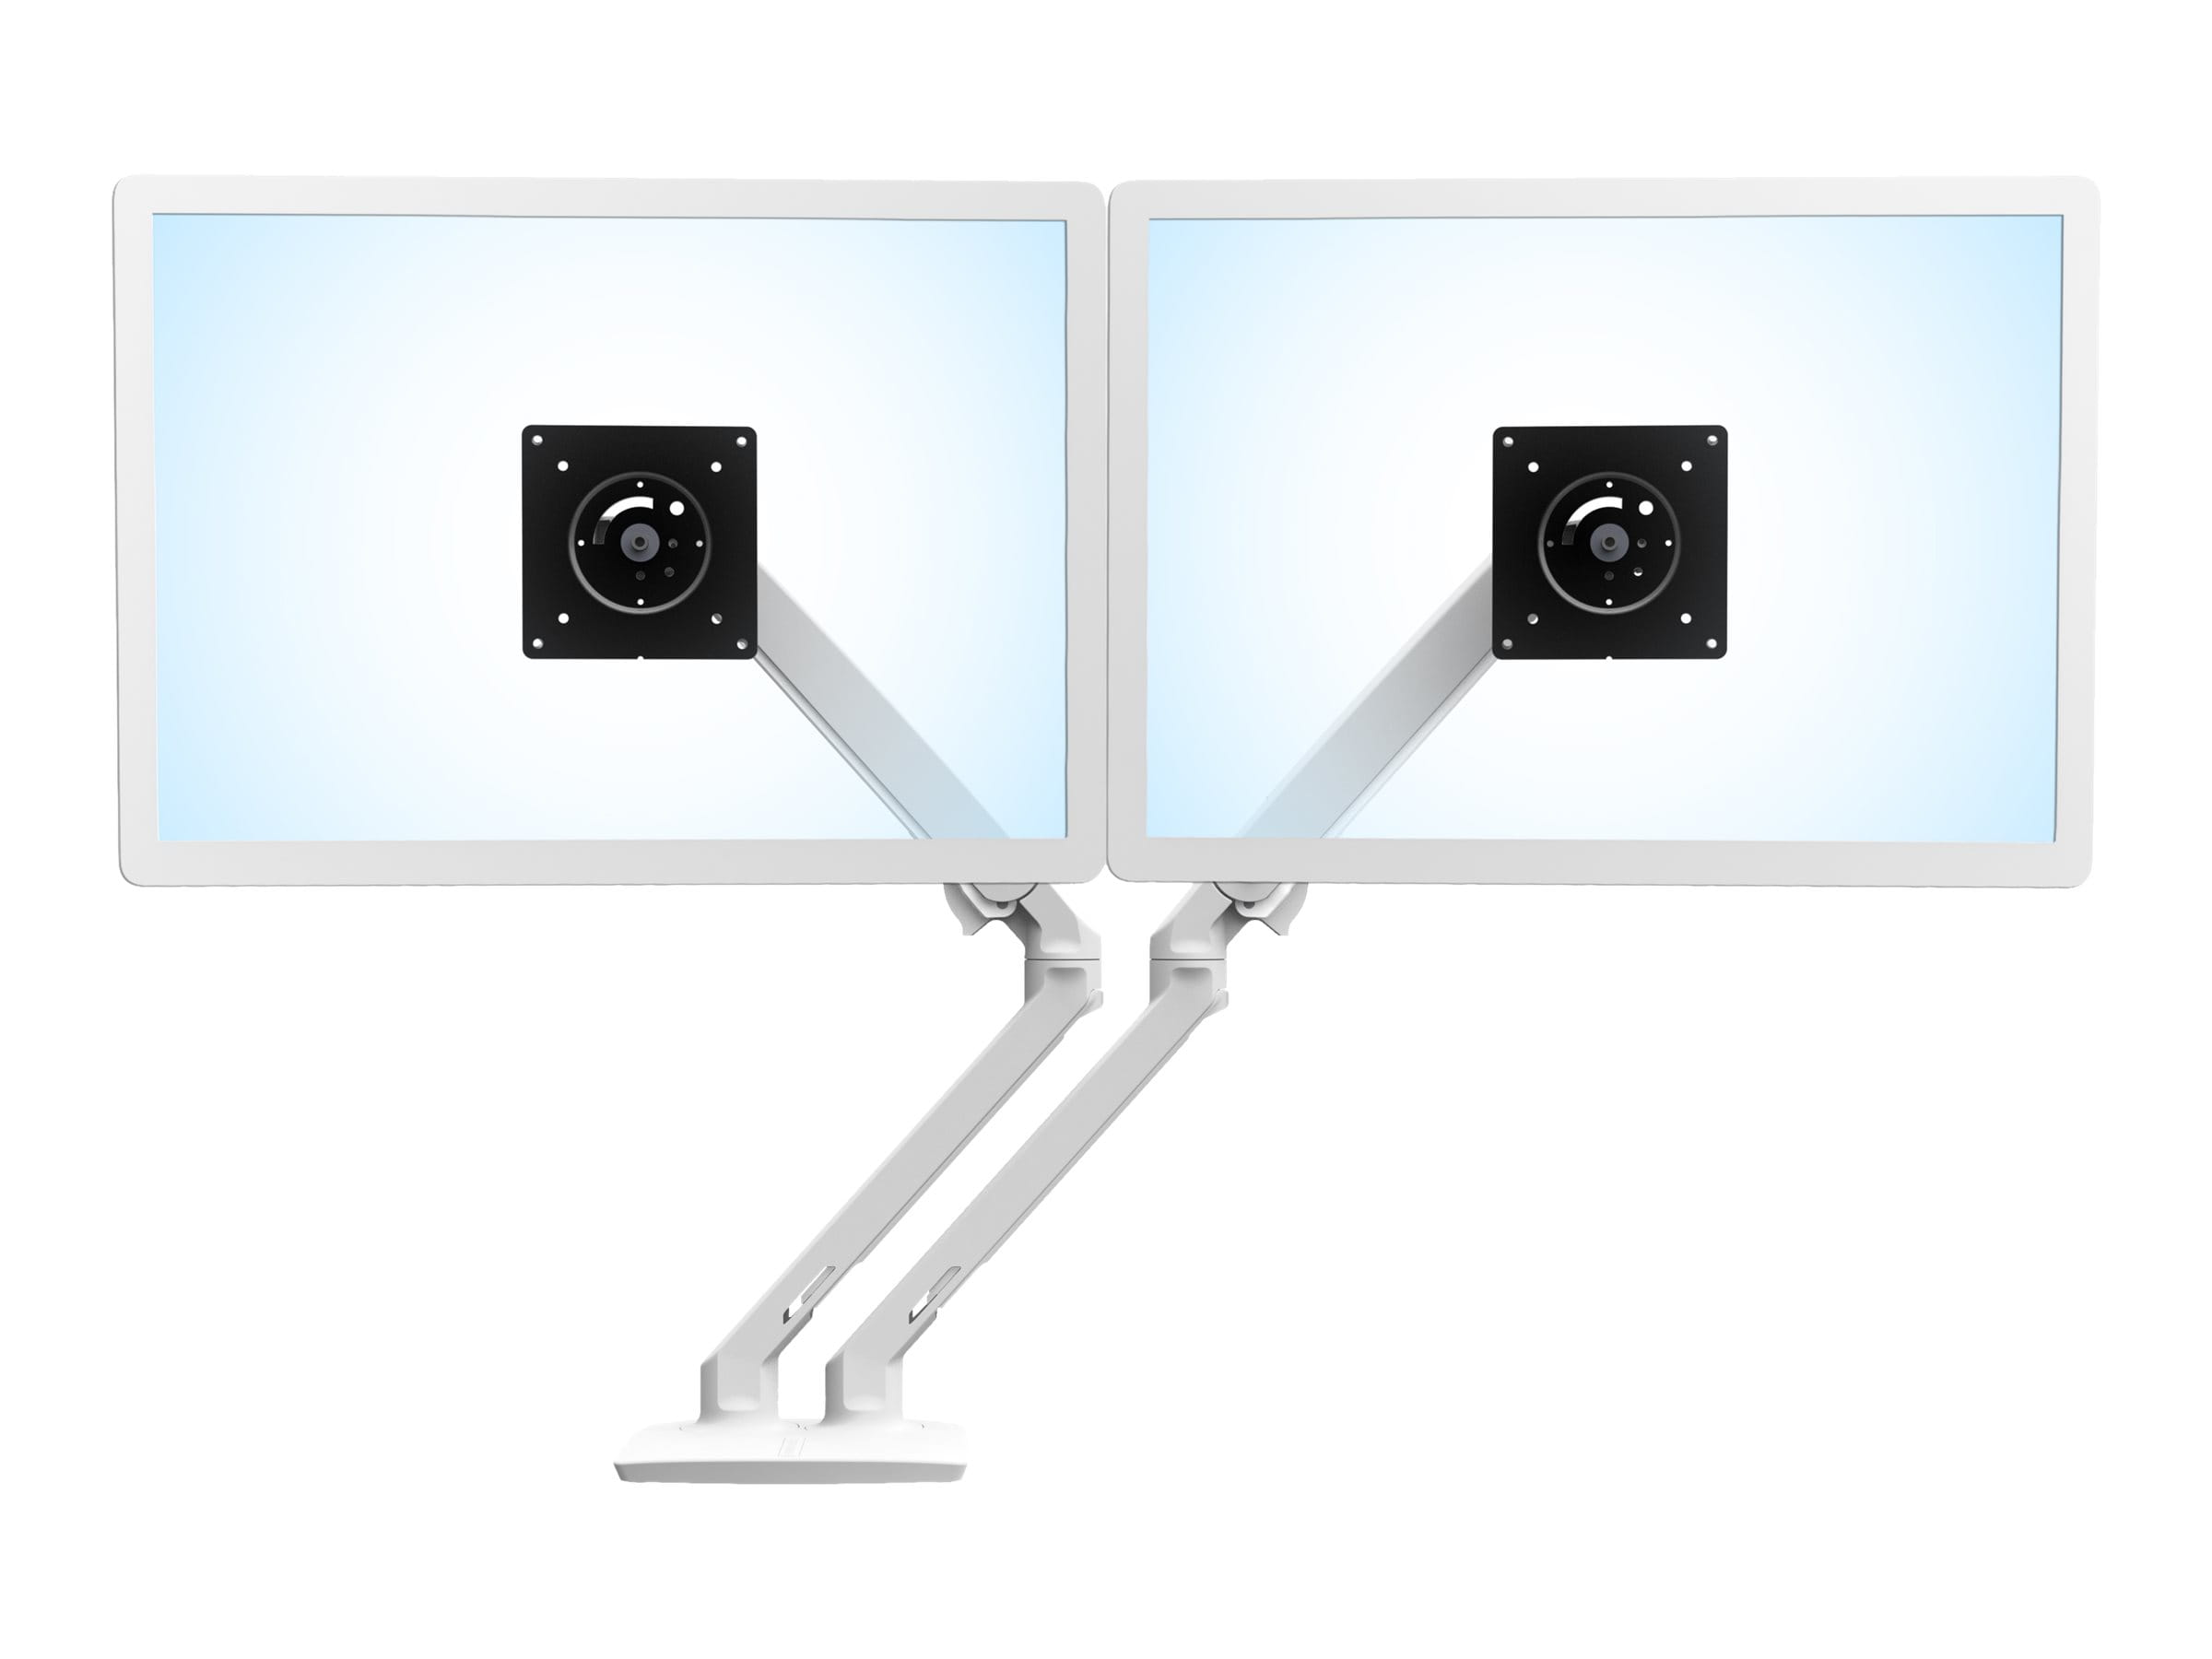 Ergotron MXV Desk Dual Monitor Arm - Befestigungskit für 2 Monitore (einstellbarer Arm)